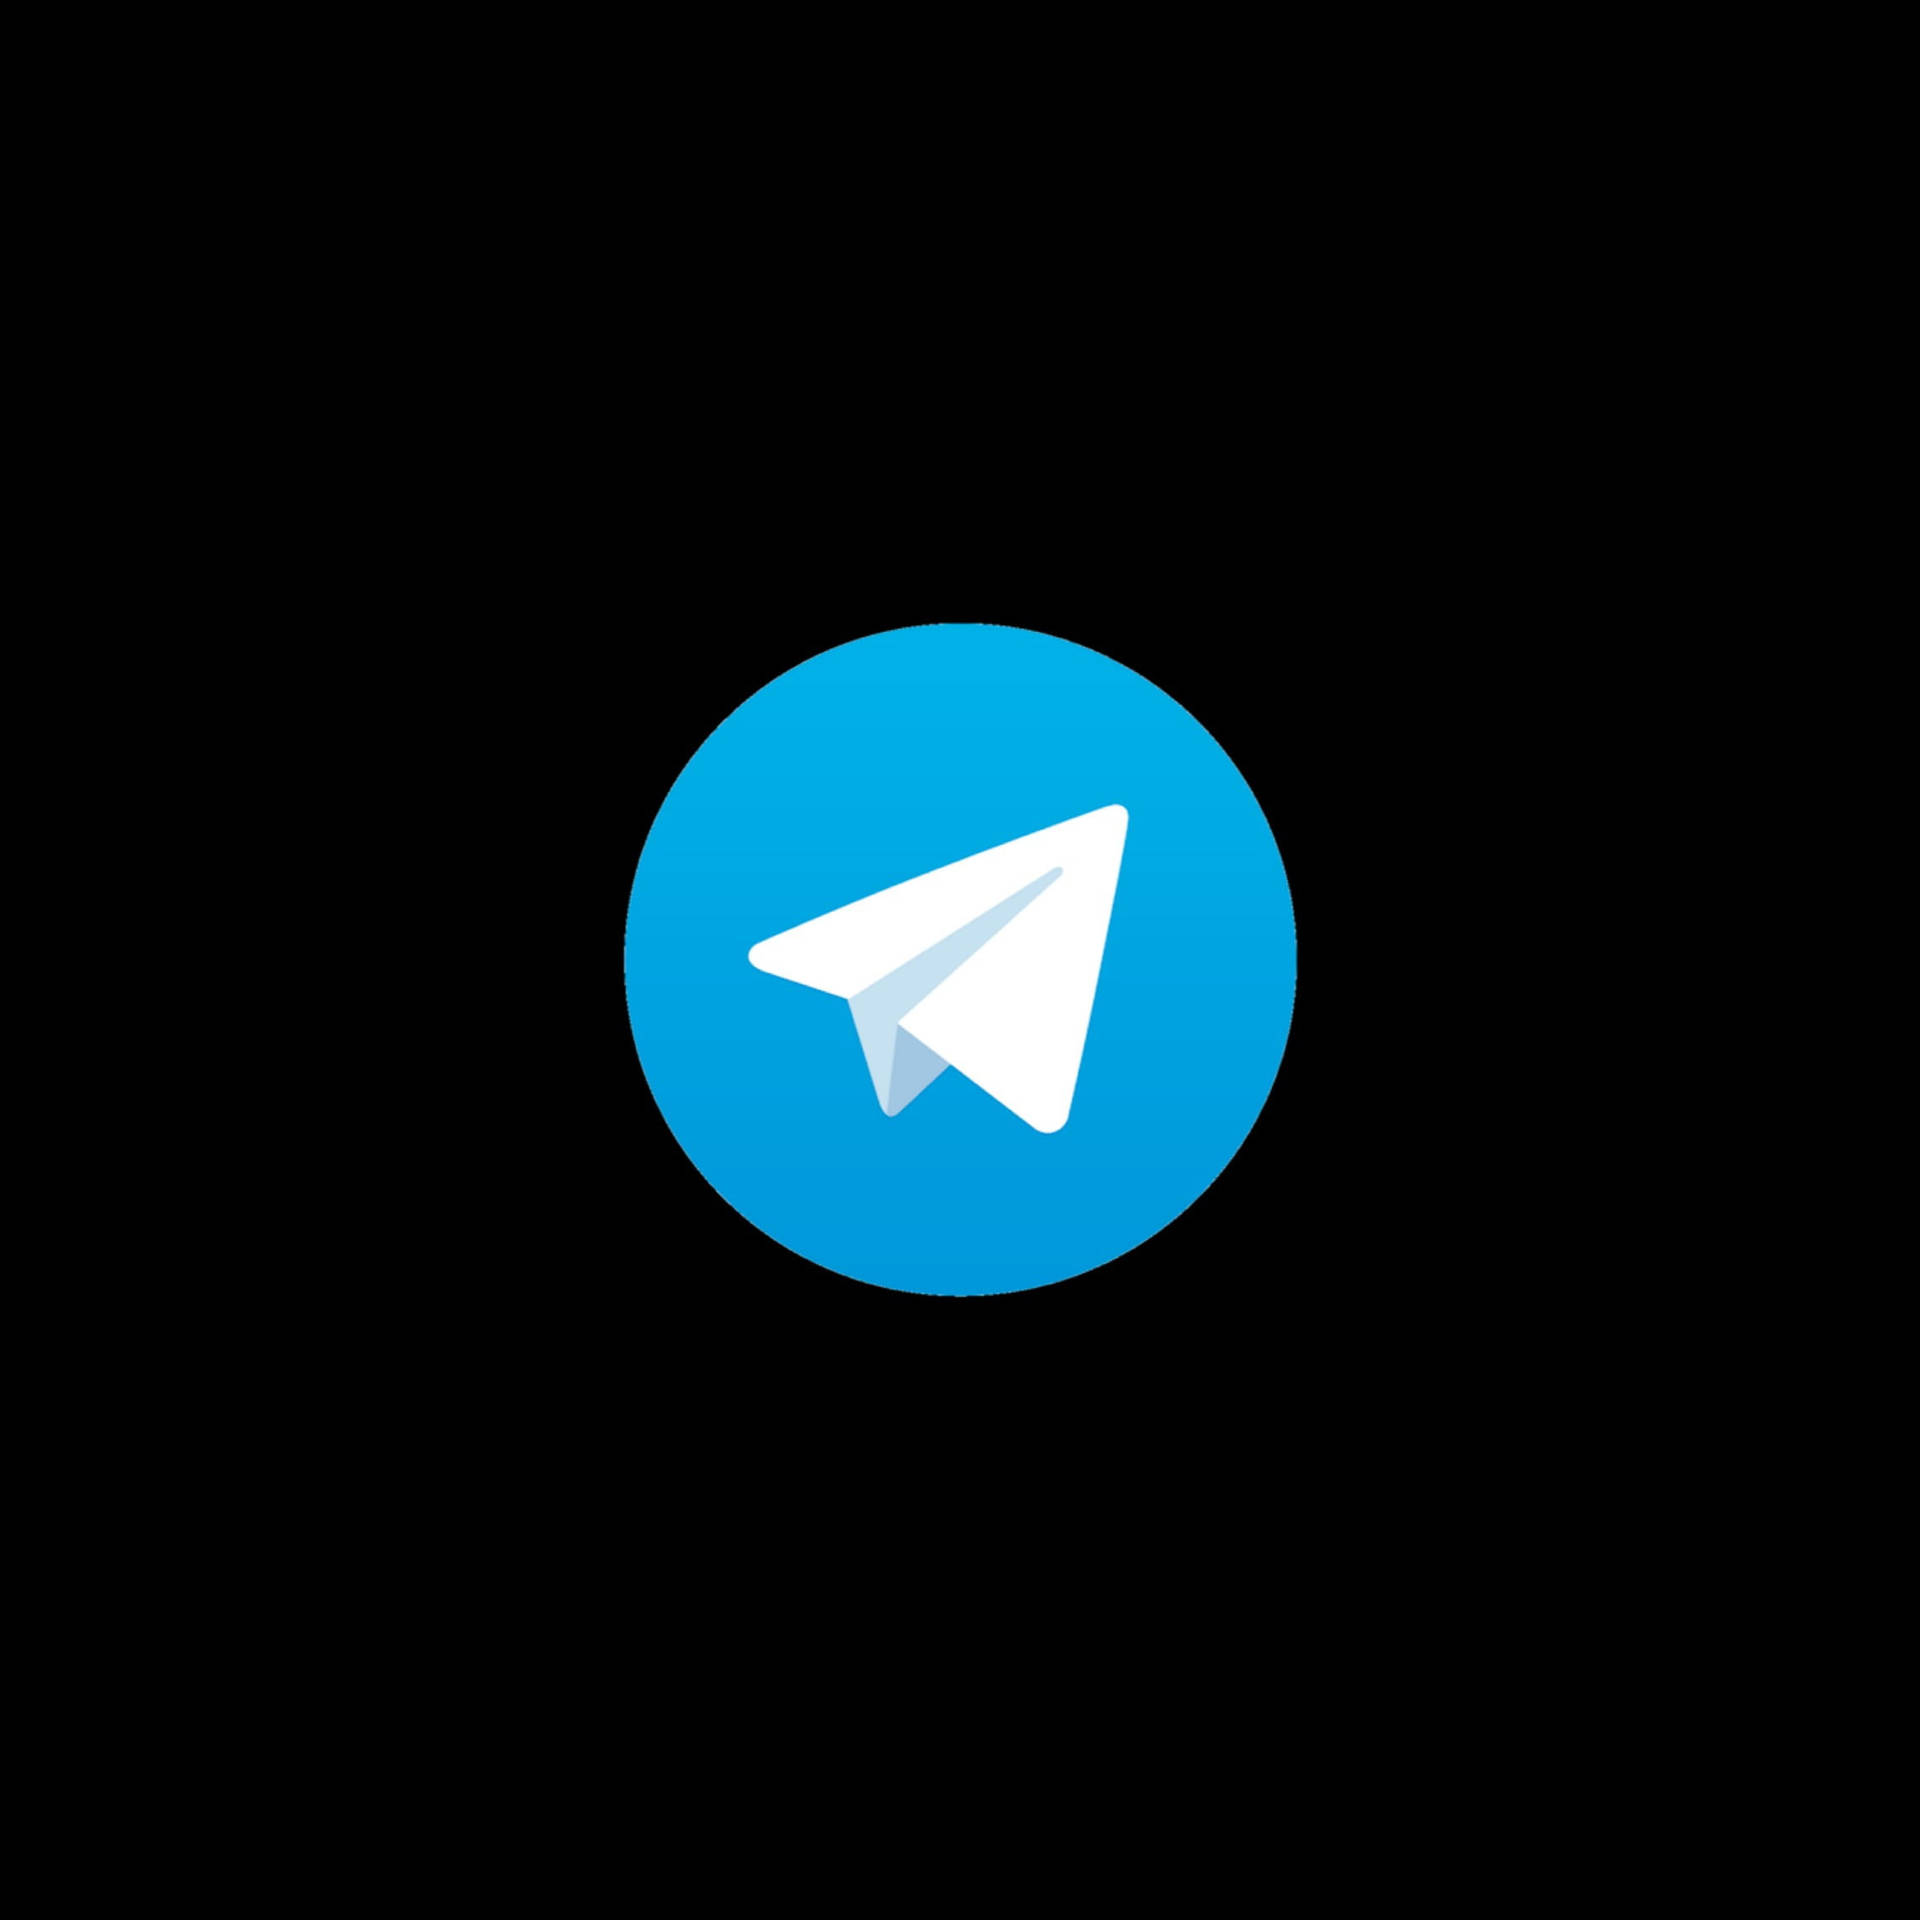 Telegram Logo Black Background Wallpaper